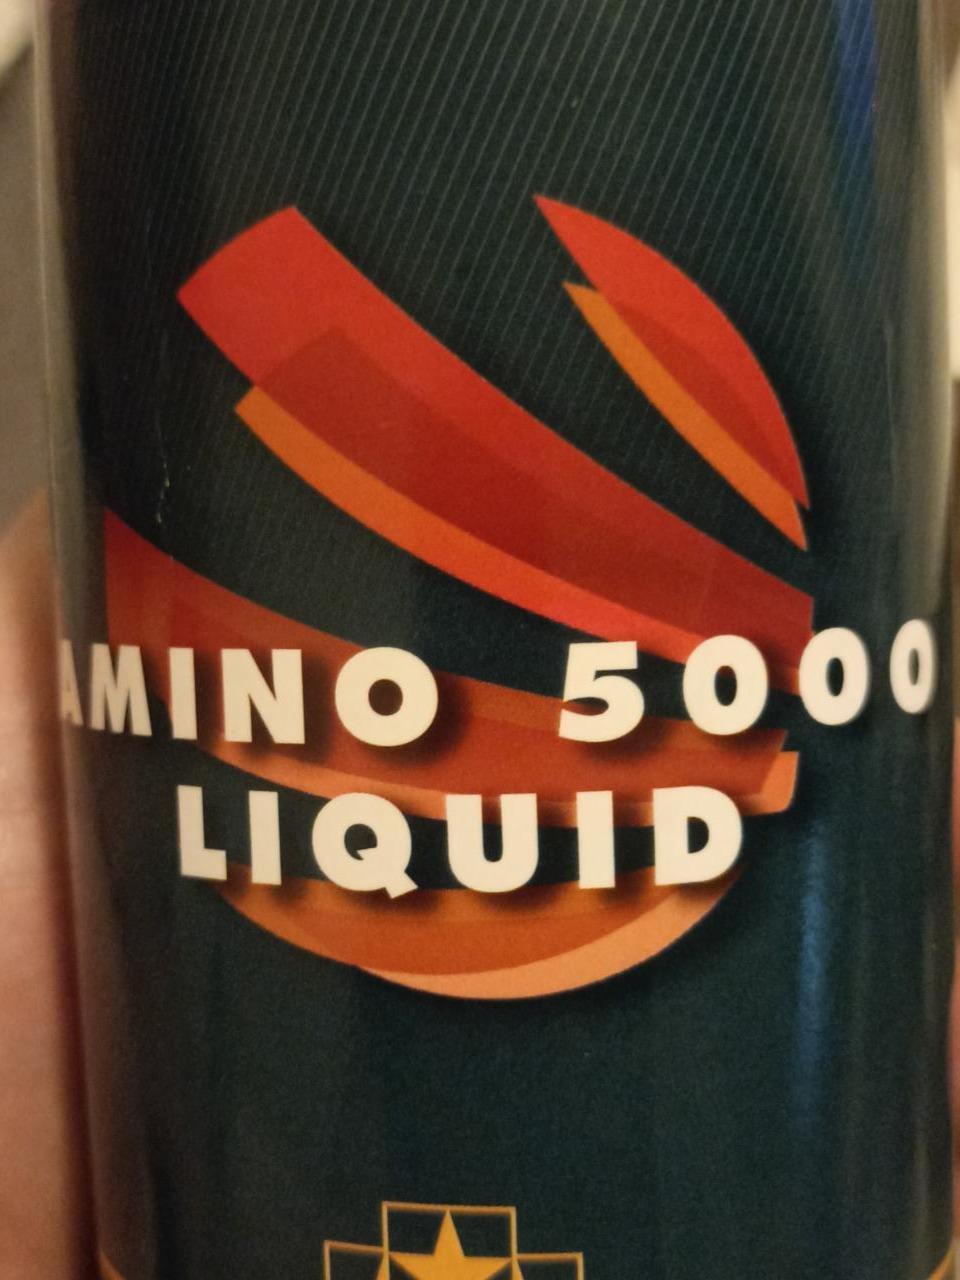 Fotografie - Amino 5000 liquid Sanas